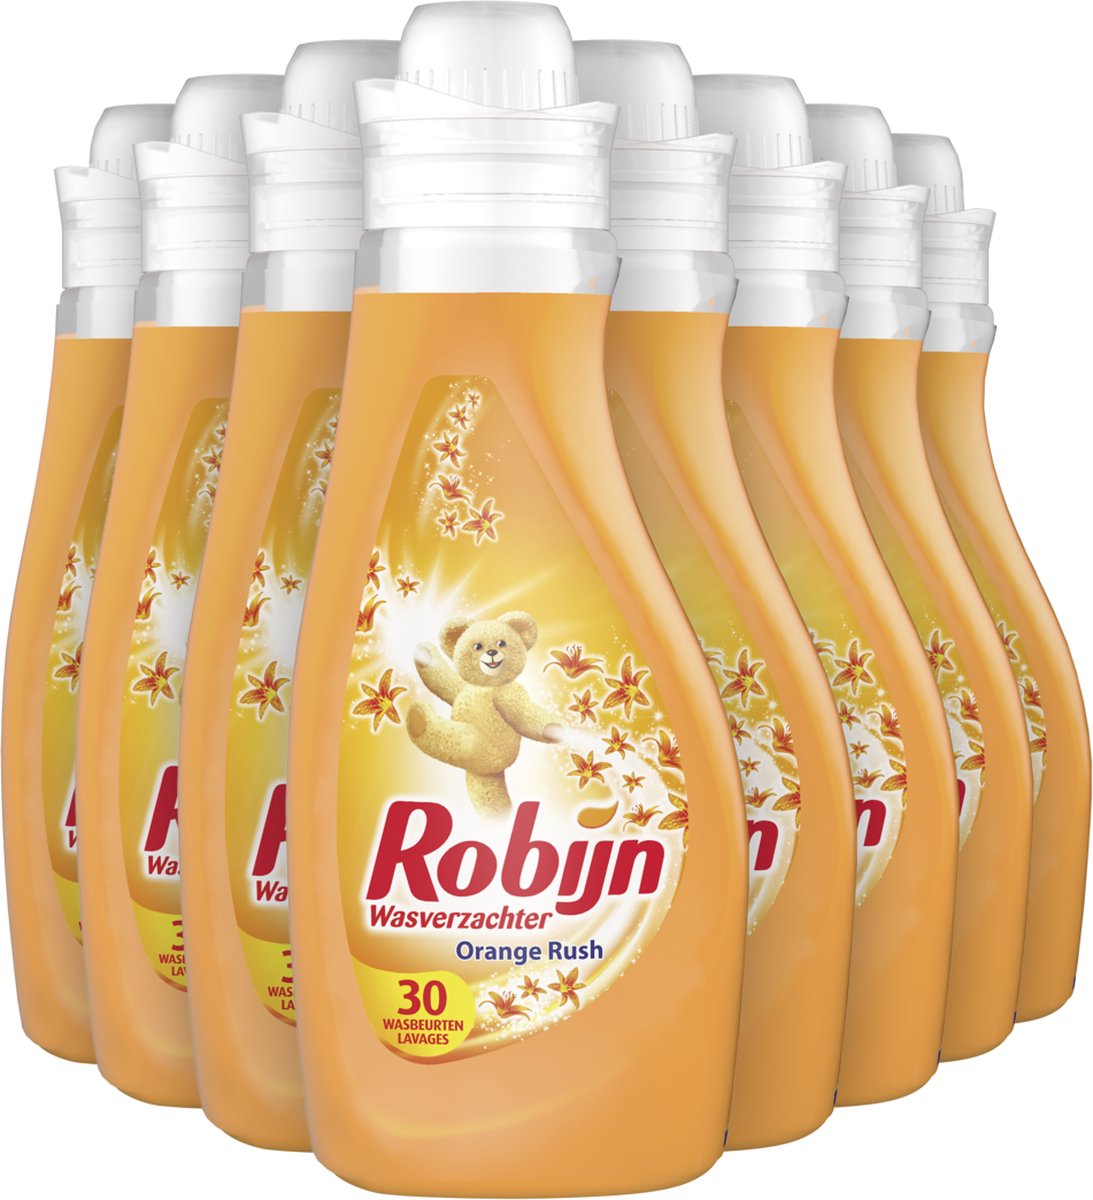 Robijn Orange Rush Wasverzachter - 8 x 30 wasbeurten - Voordeelverpakking